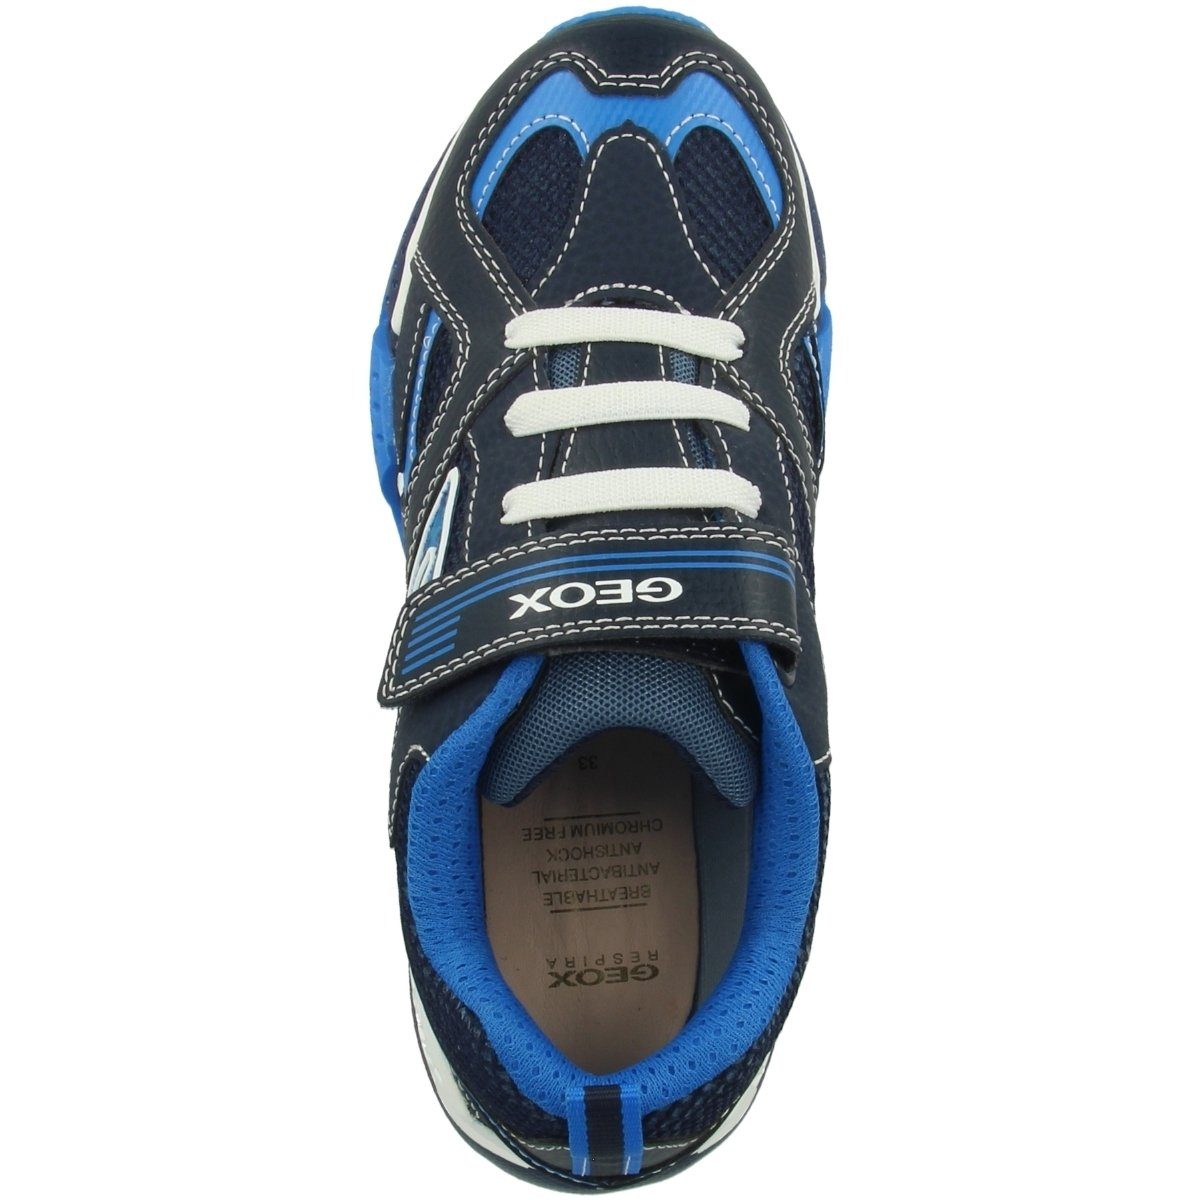 Kinder Unisex J LED Funktion B. Geox Sneaker A Bayonyc blau